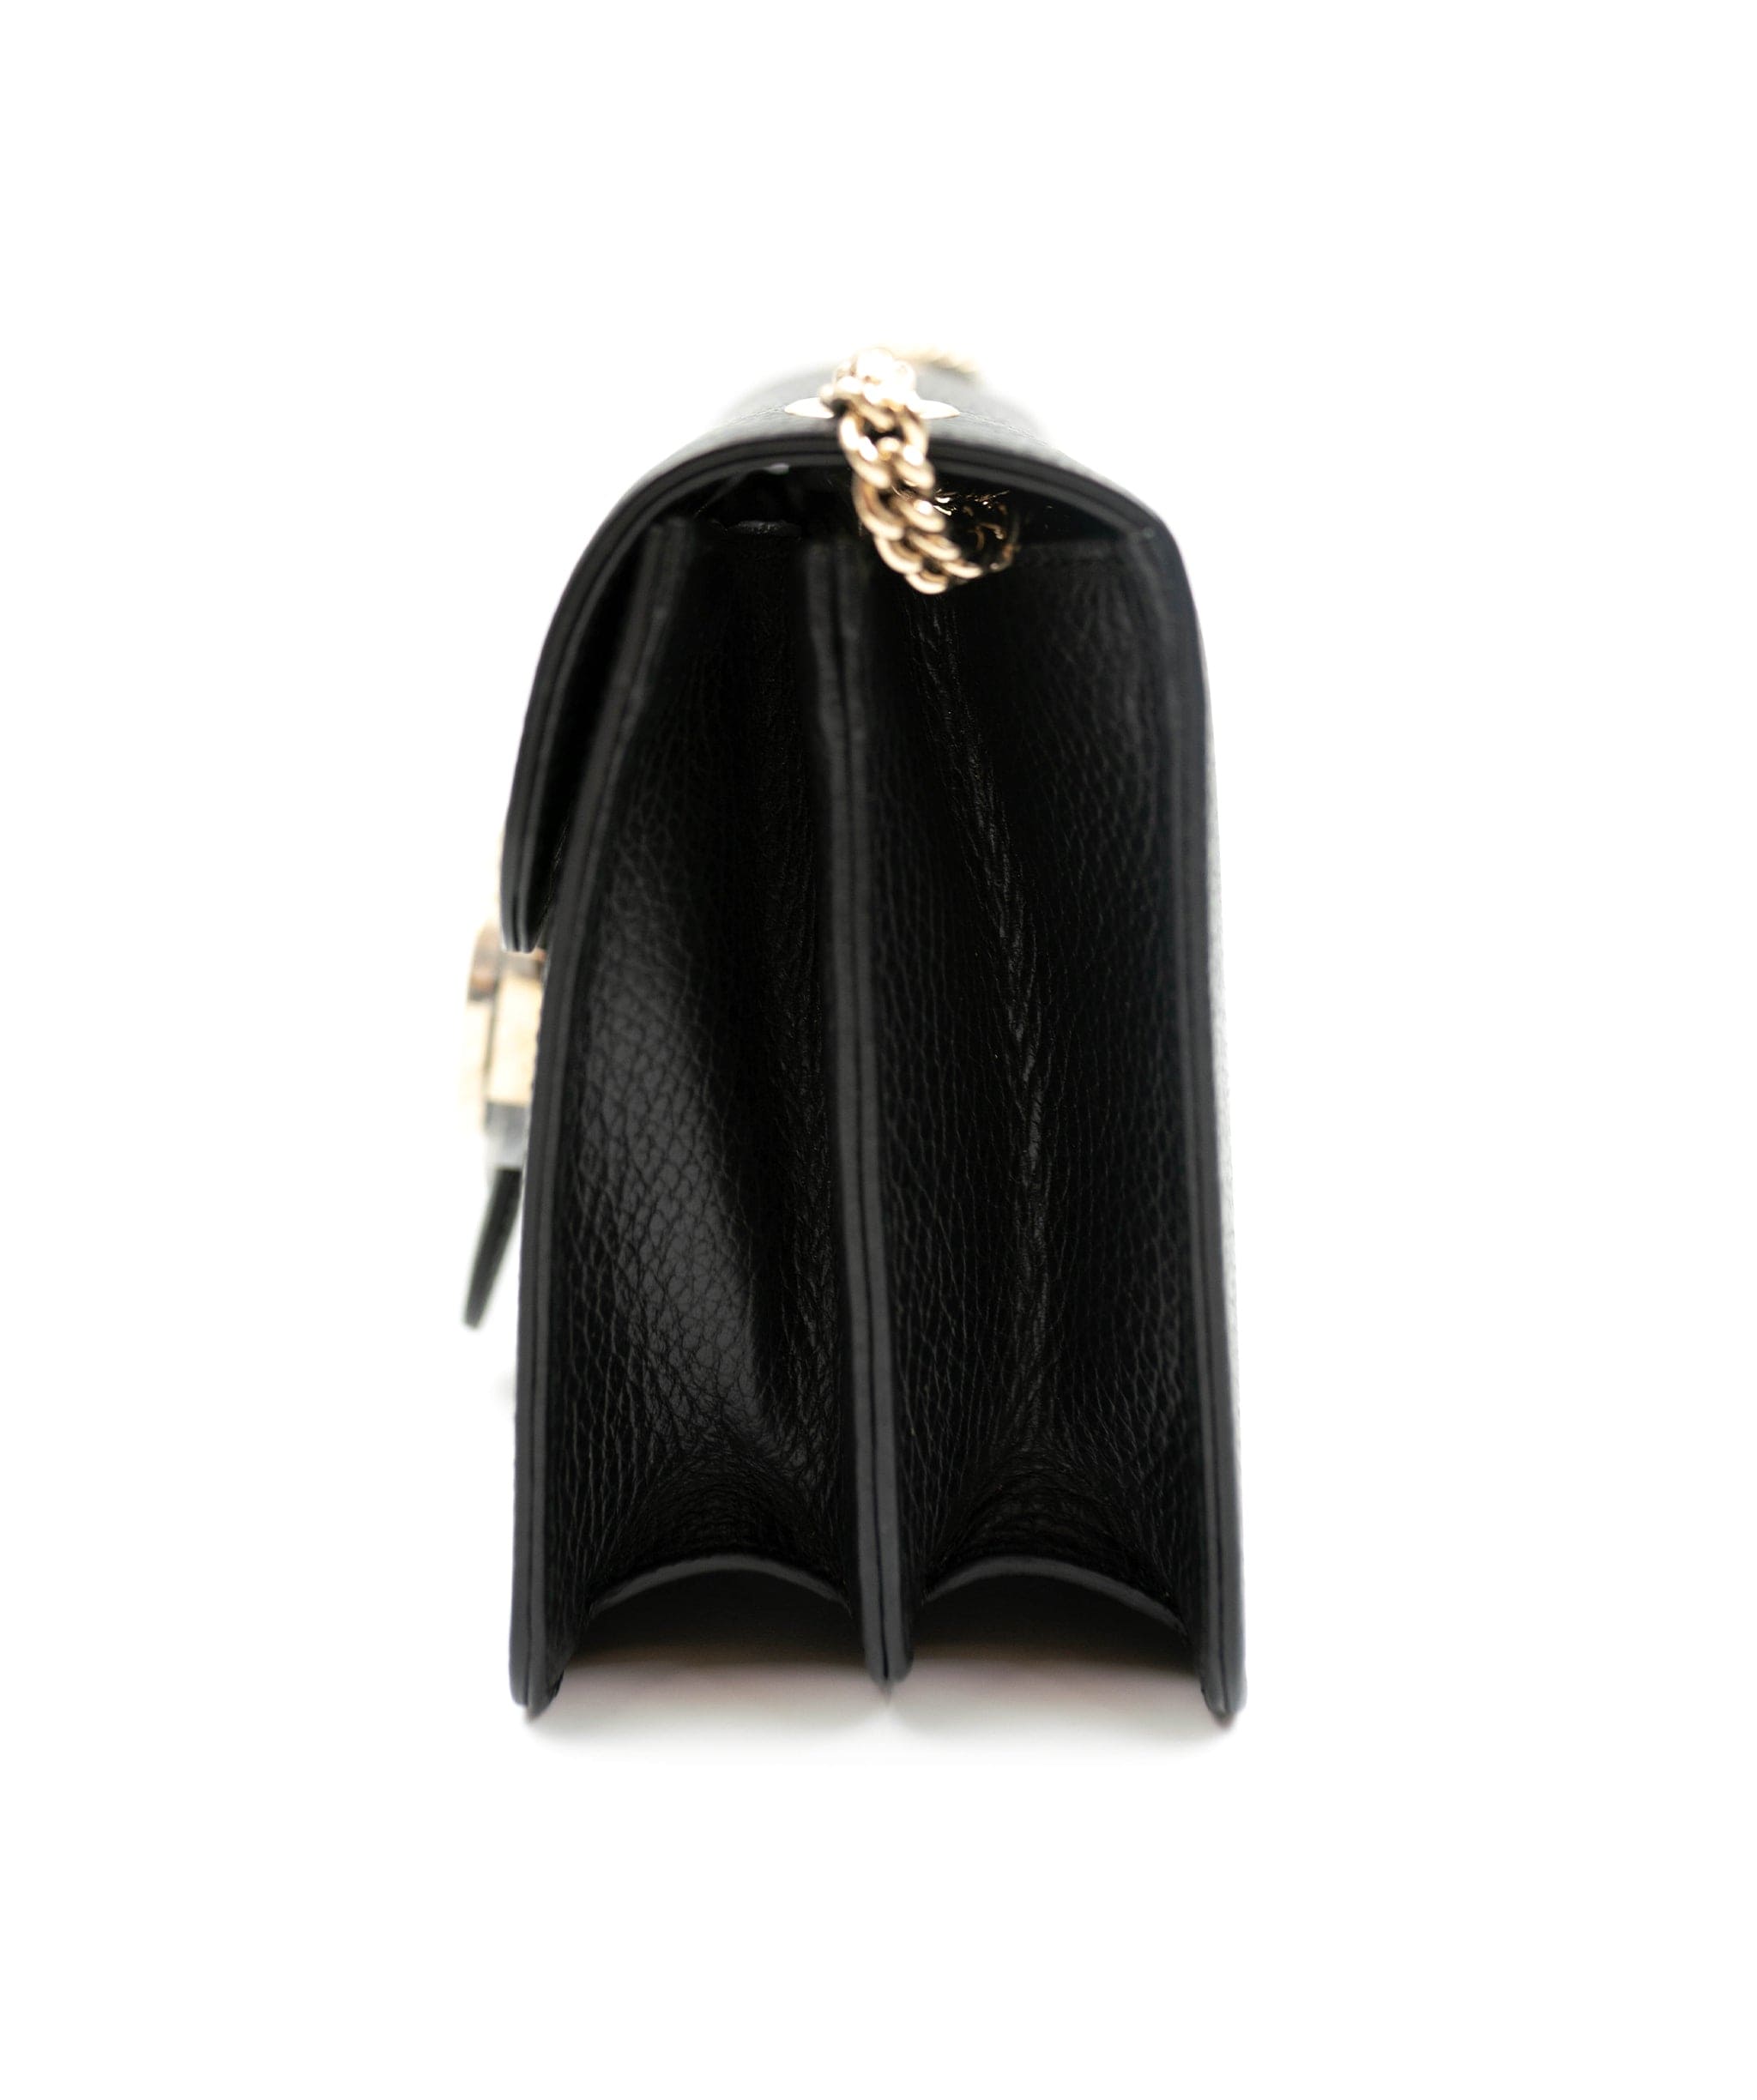 Gucci Gucci marmont black bag ALC0025